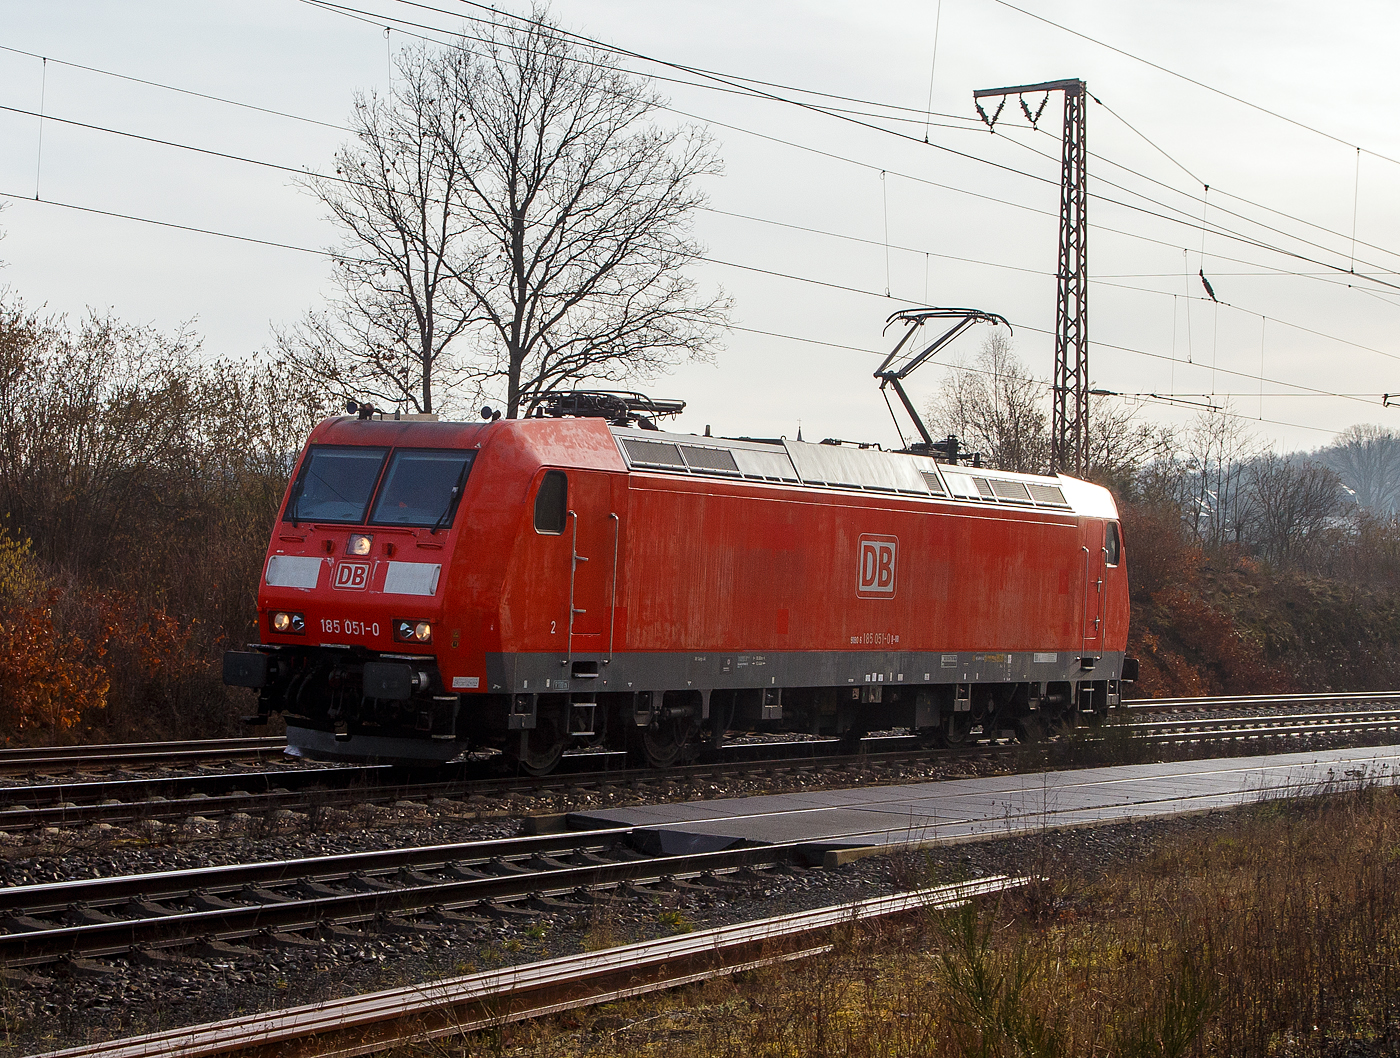 Die 185 052-8 (91 80 6185 052-8 D-DB) der DB Cargo AG fhrt am 22.02.2023 fhrt auf Tfzf (Triebfahrzeugfahrt) durch Rudersdorf (Kr. Siegen) in Richtung Kreuztal.

Die TRAXX F140 AC1 wurde 2001 von der Bombardier in Kassel unter der Fabriknummer 33457 gebaut.